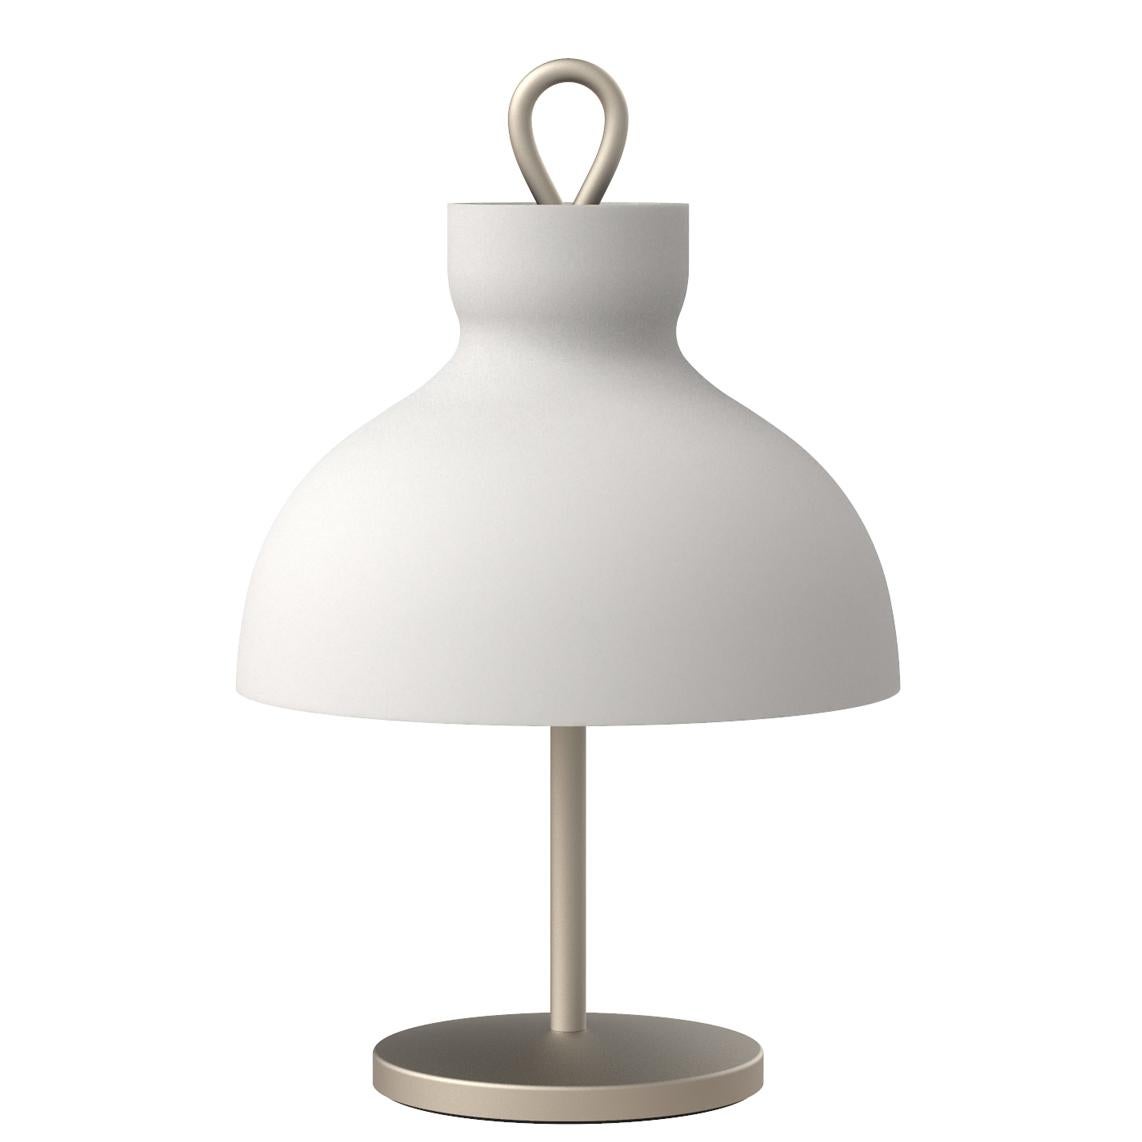 Ignazio Gardella 'Arenzano Bassa' Table Lamp in Brass and Glass For Sale 4